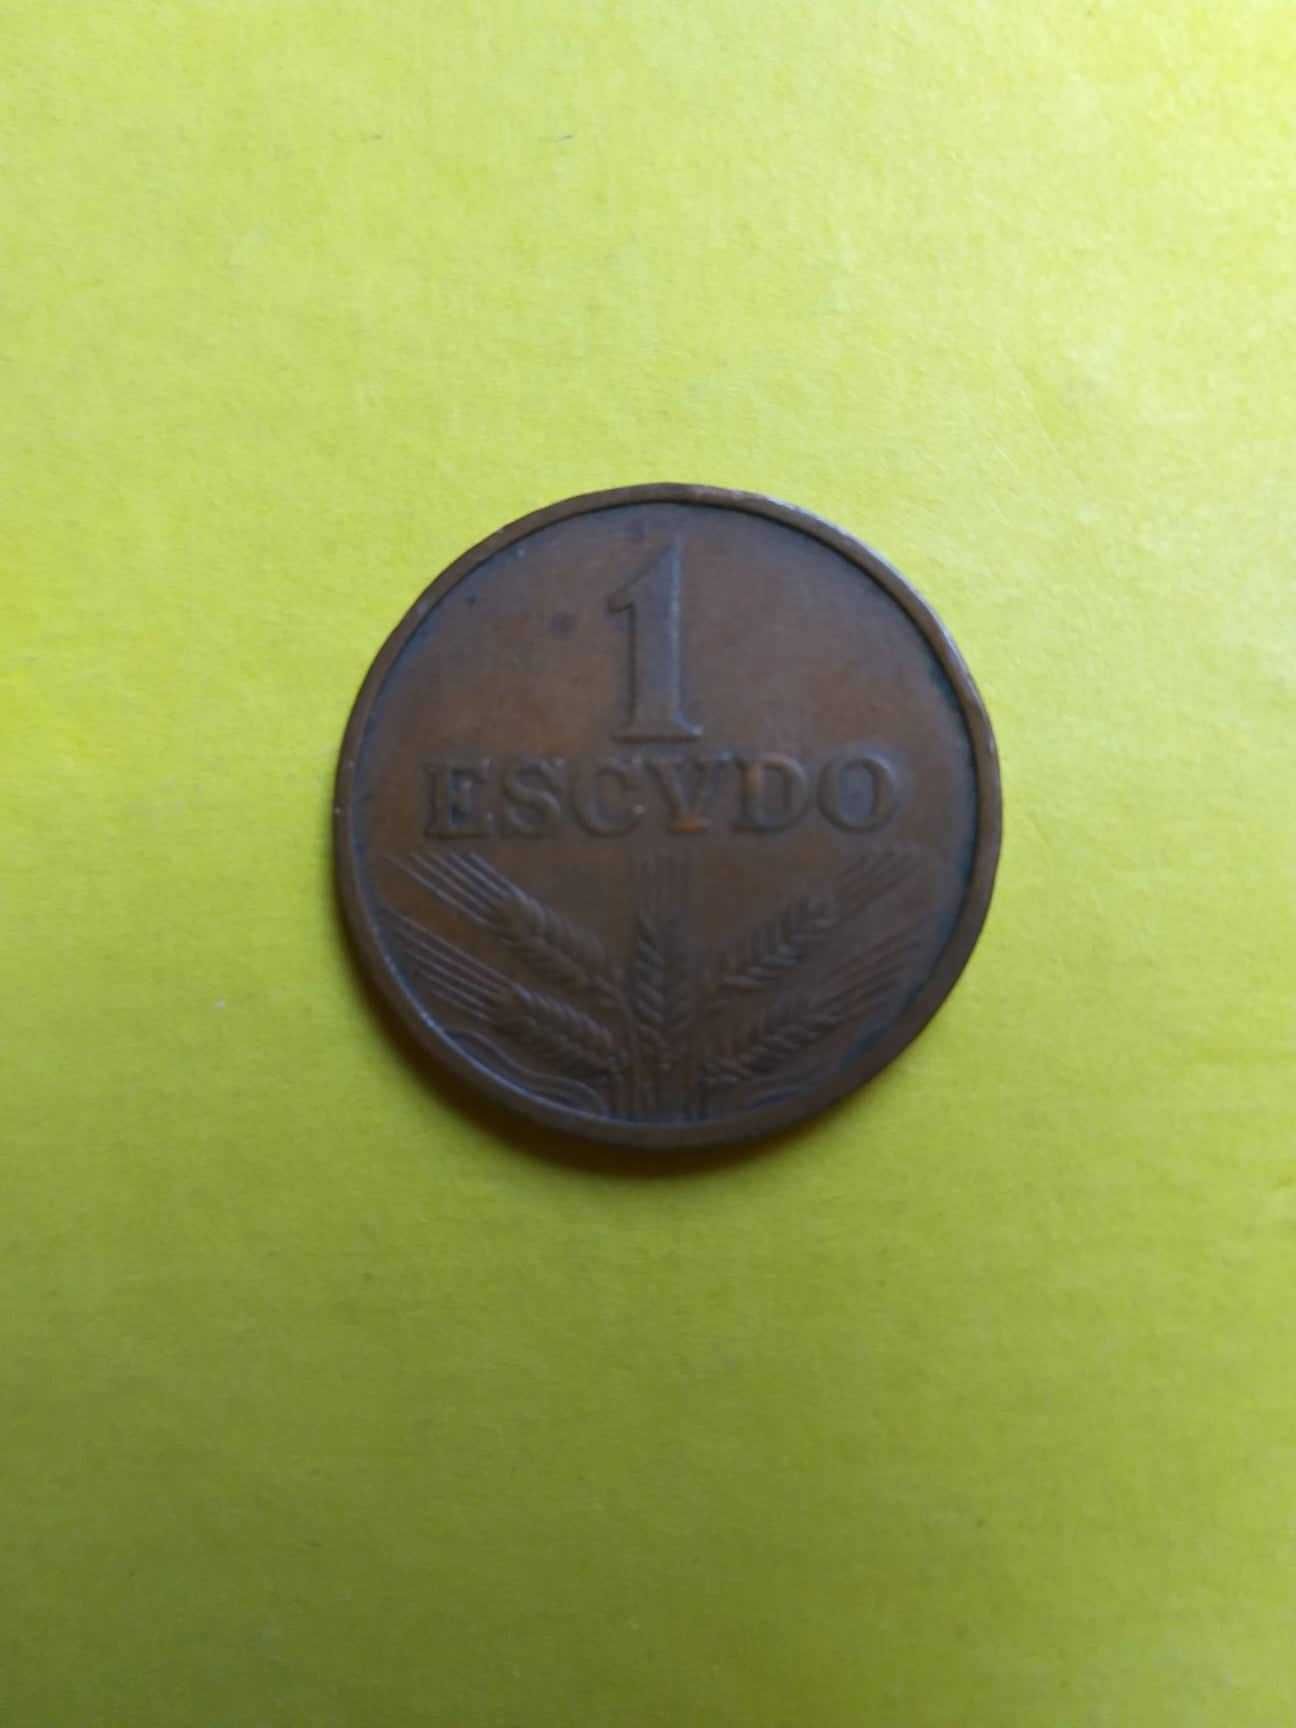 UM ESCUDO (1$00) BRONZE 1969